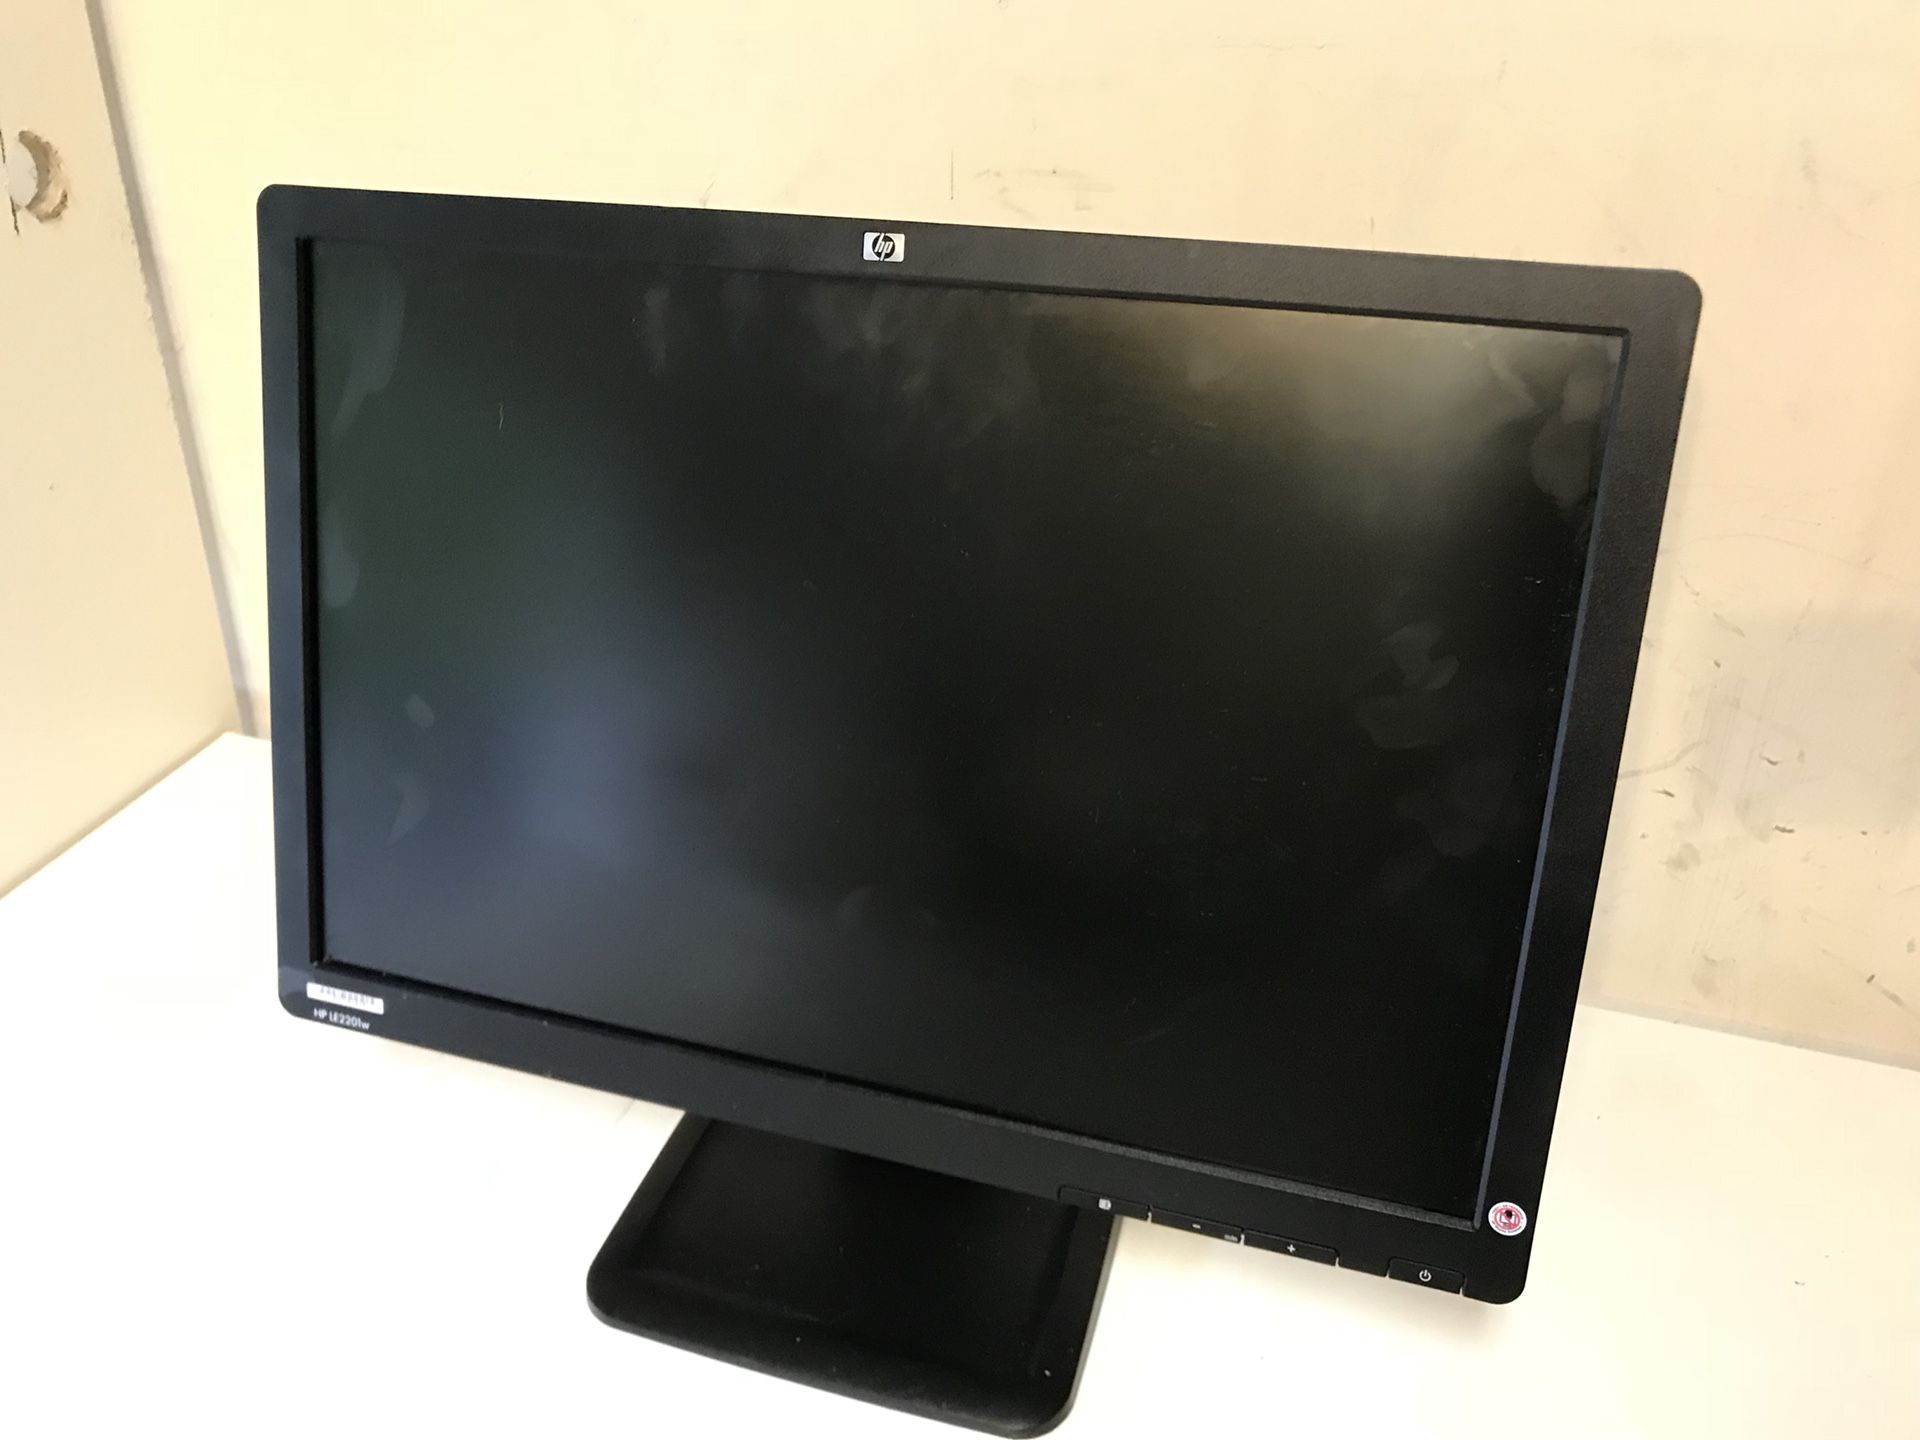 HP LE2201w 21” Computer Monitor